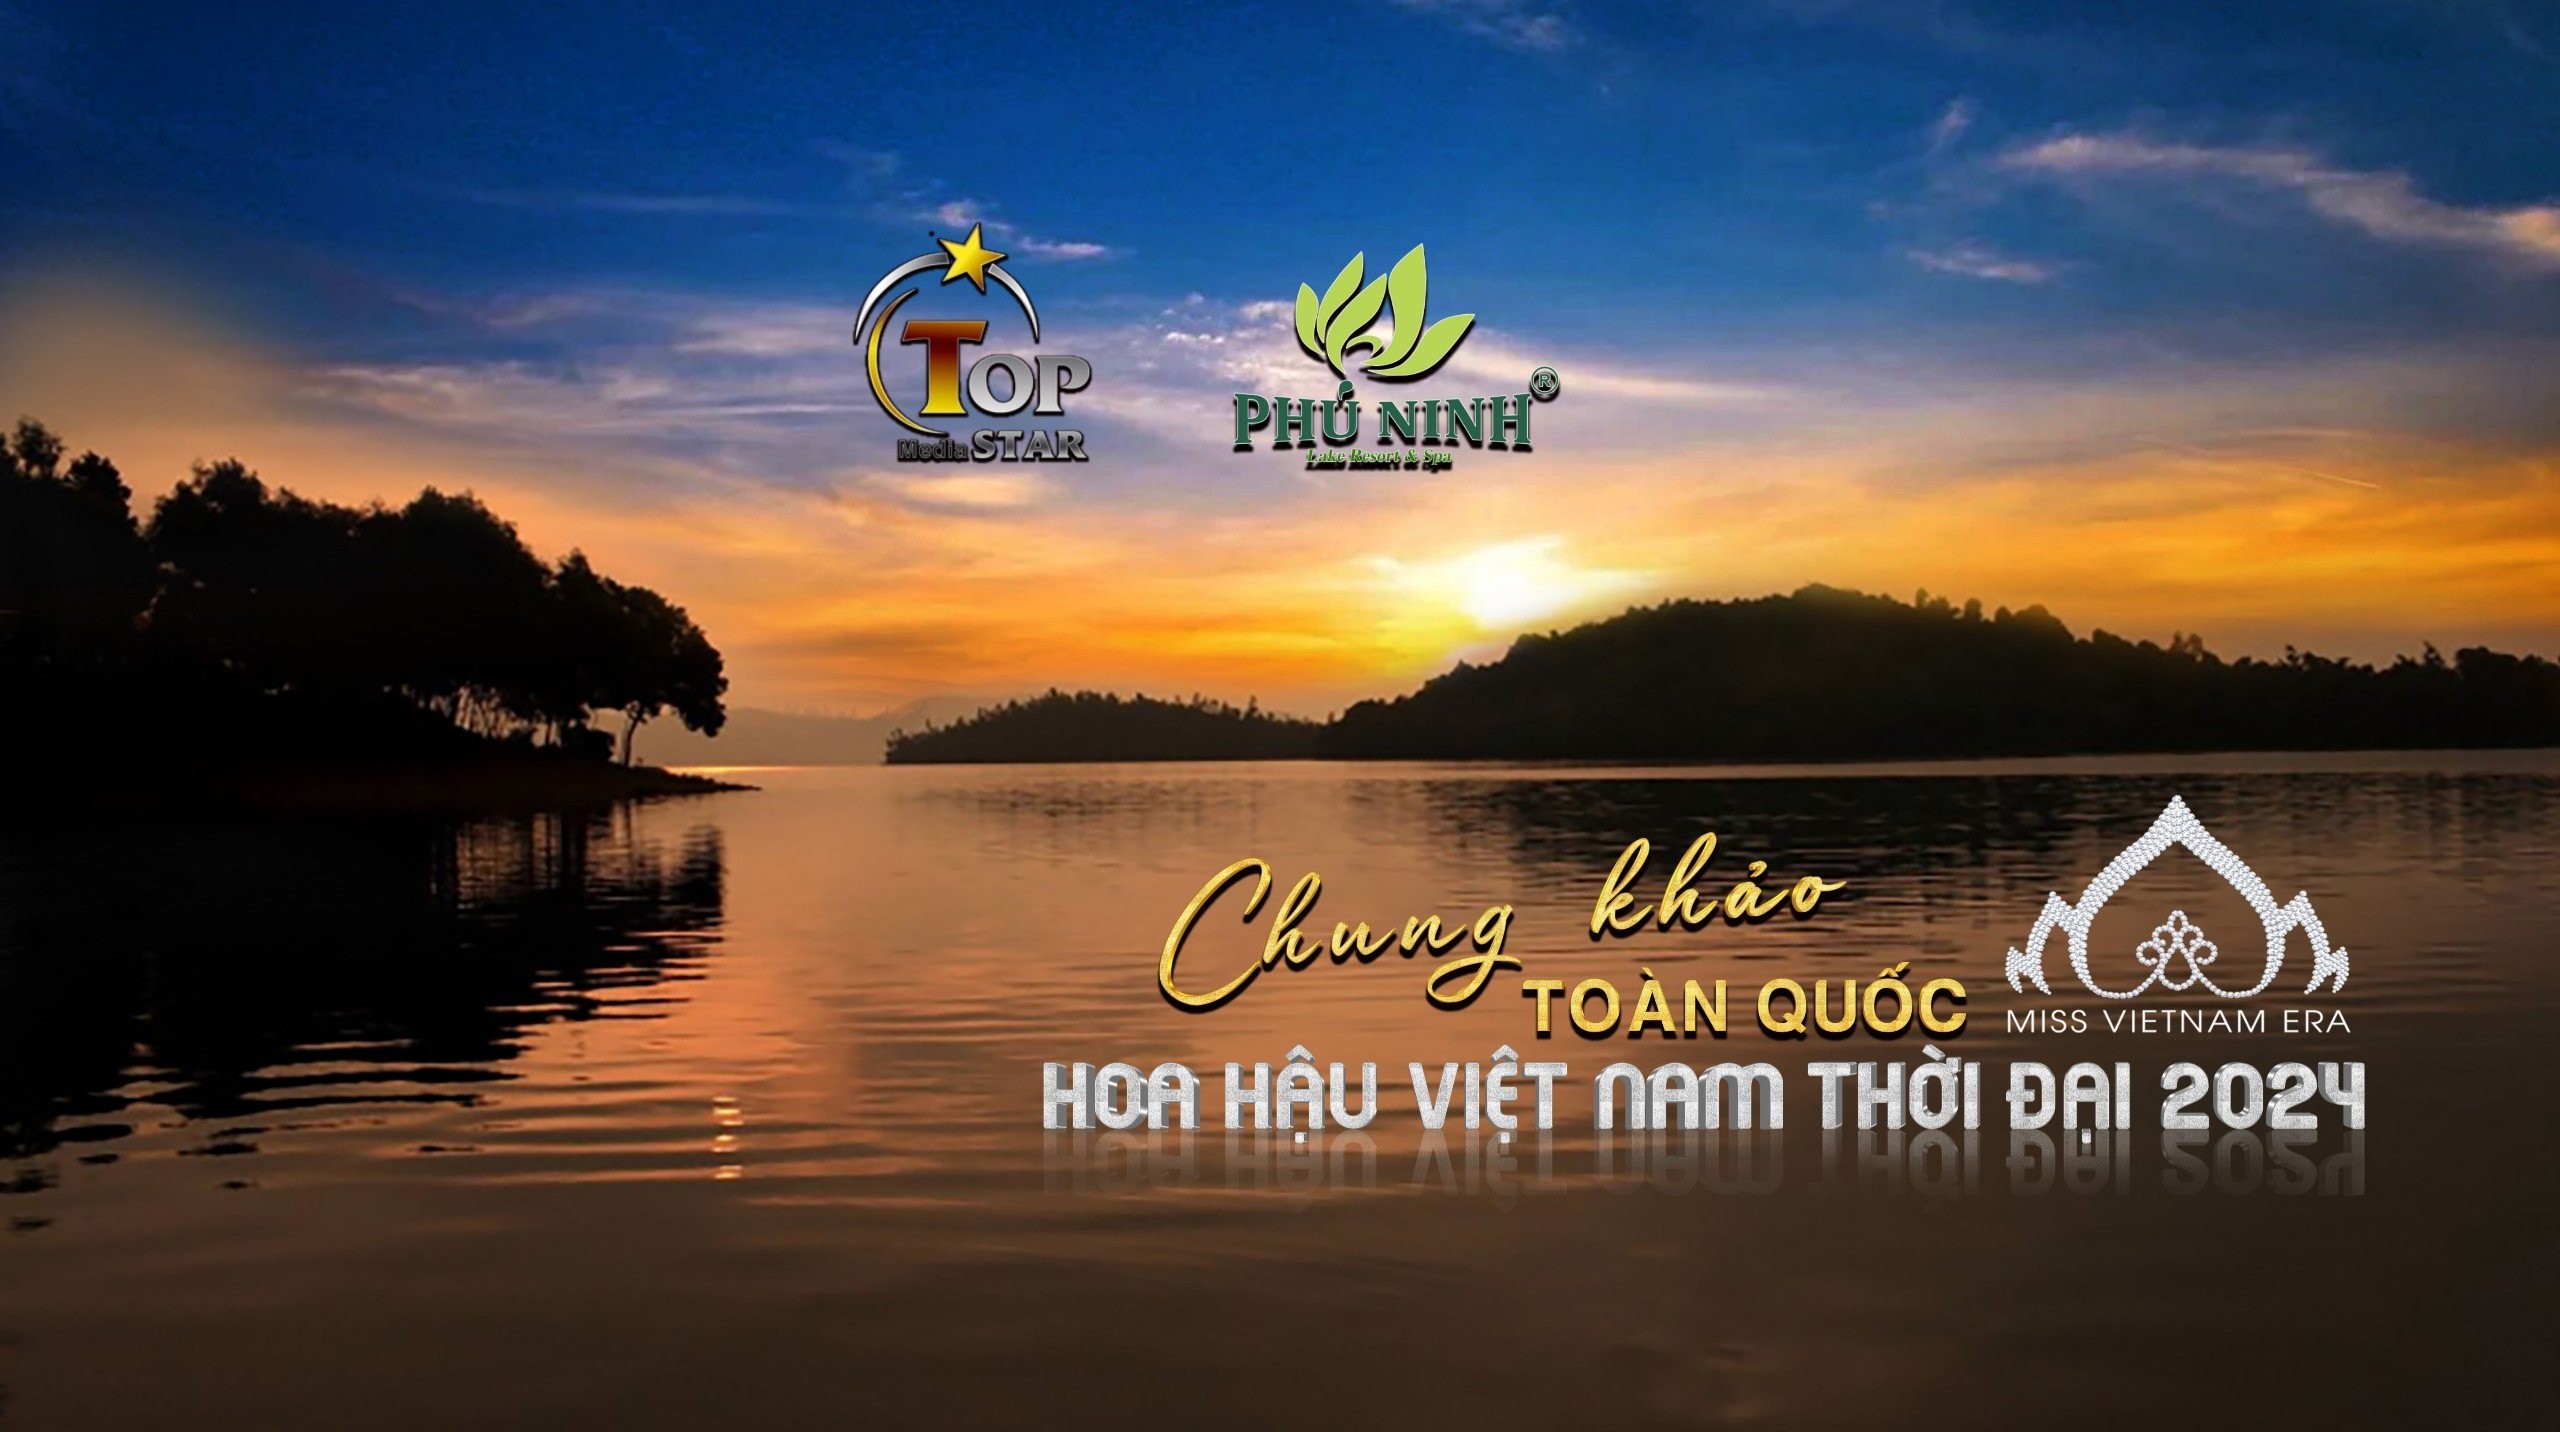 Công bố lịch trình vòng Chung khảo toàn quốc Hoa hậu Việt Nam Thời đại 2024